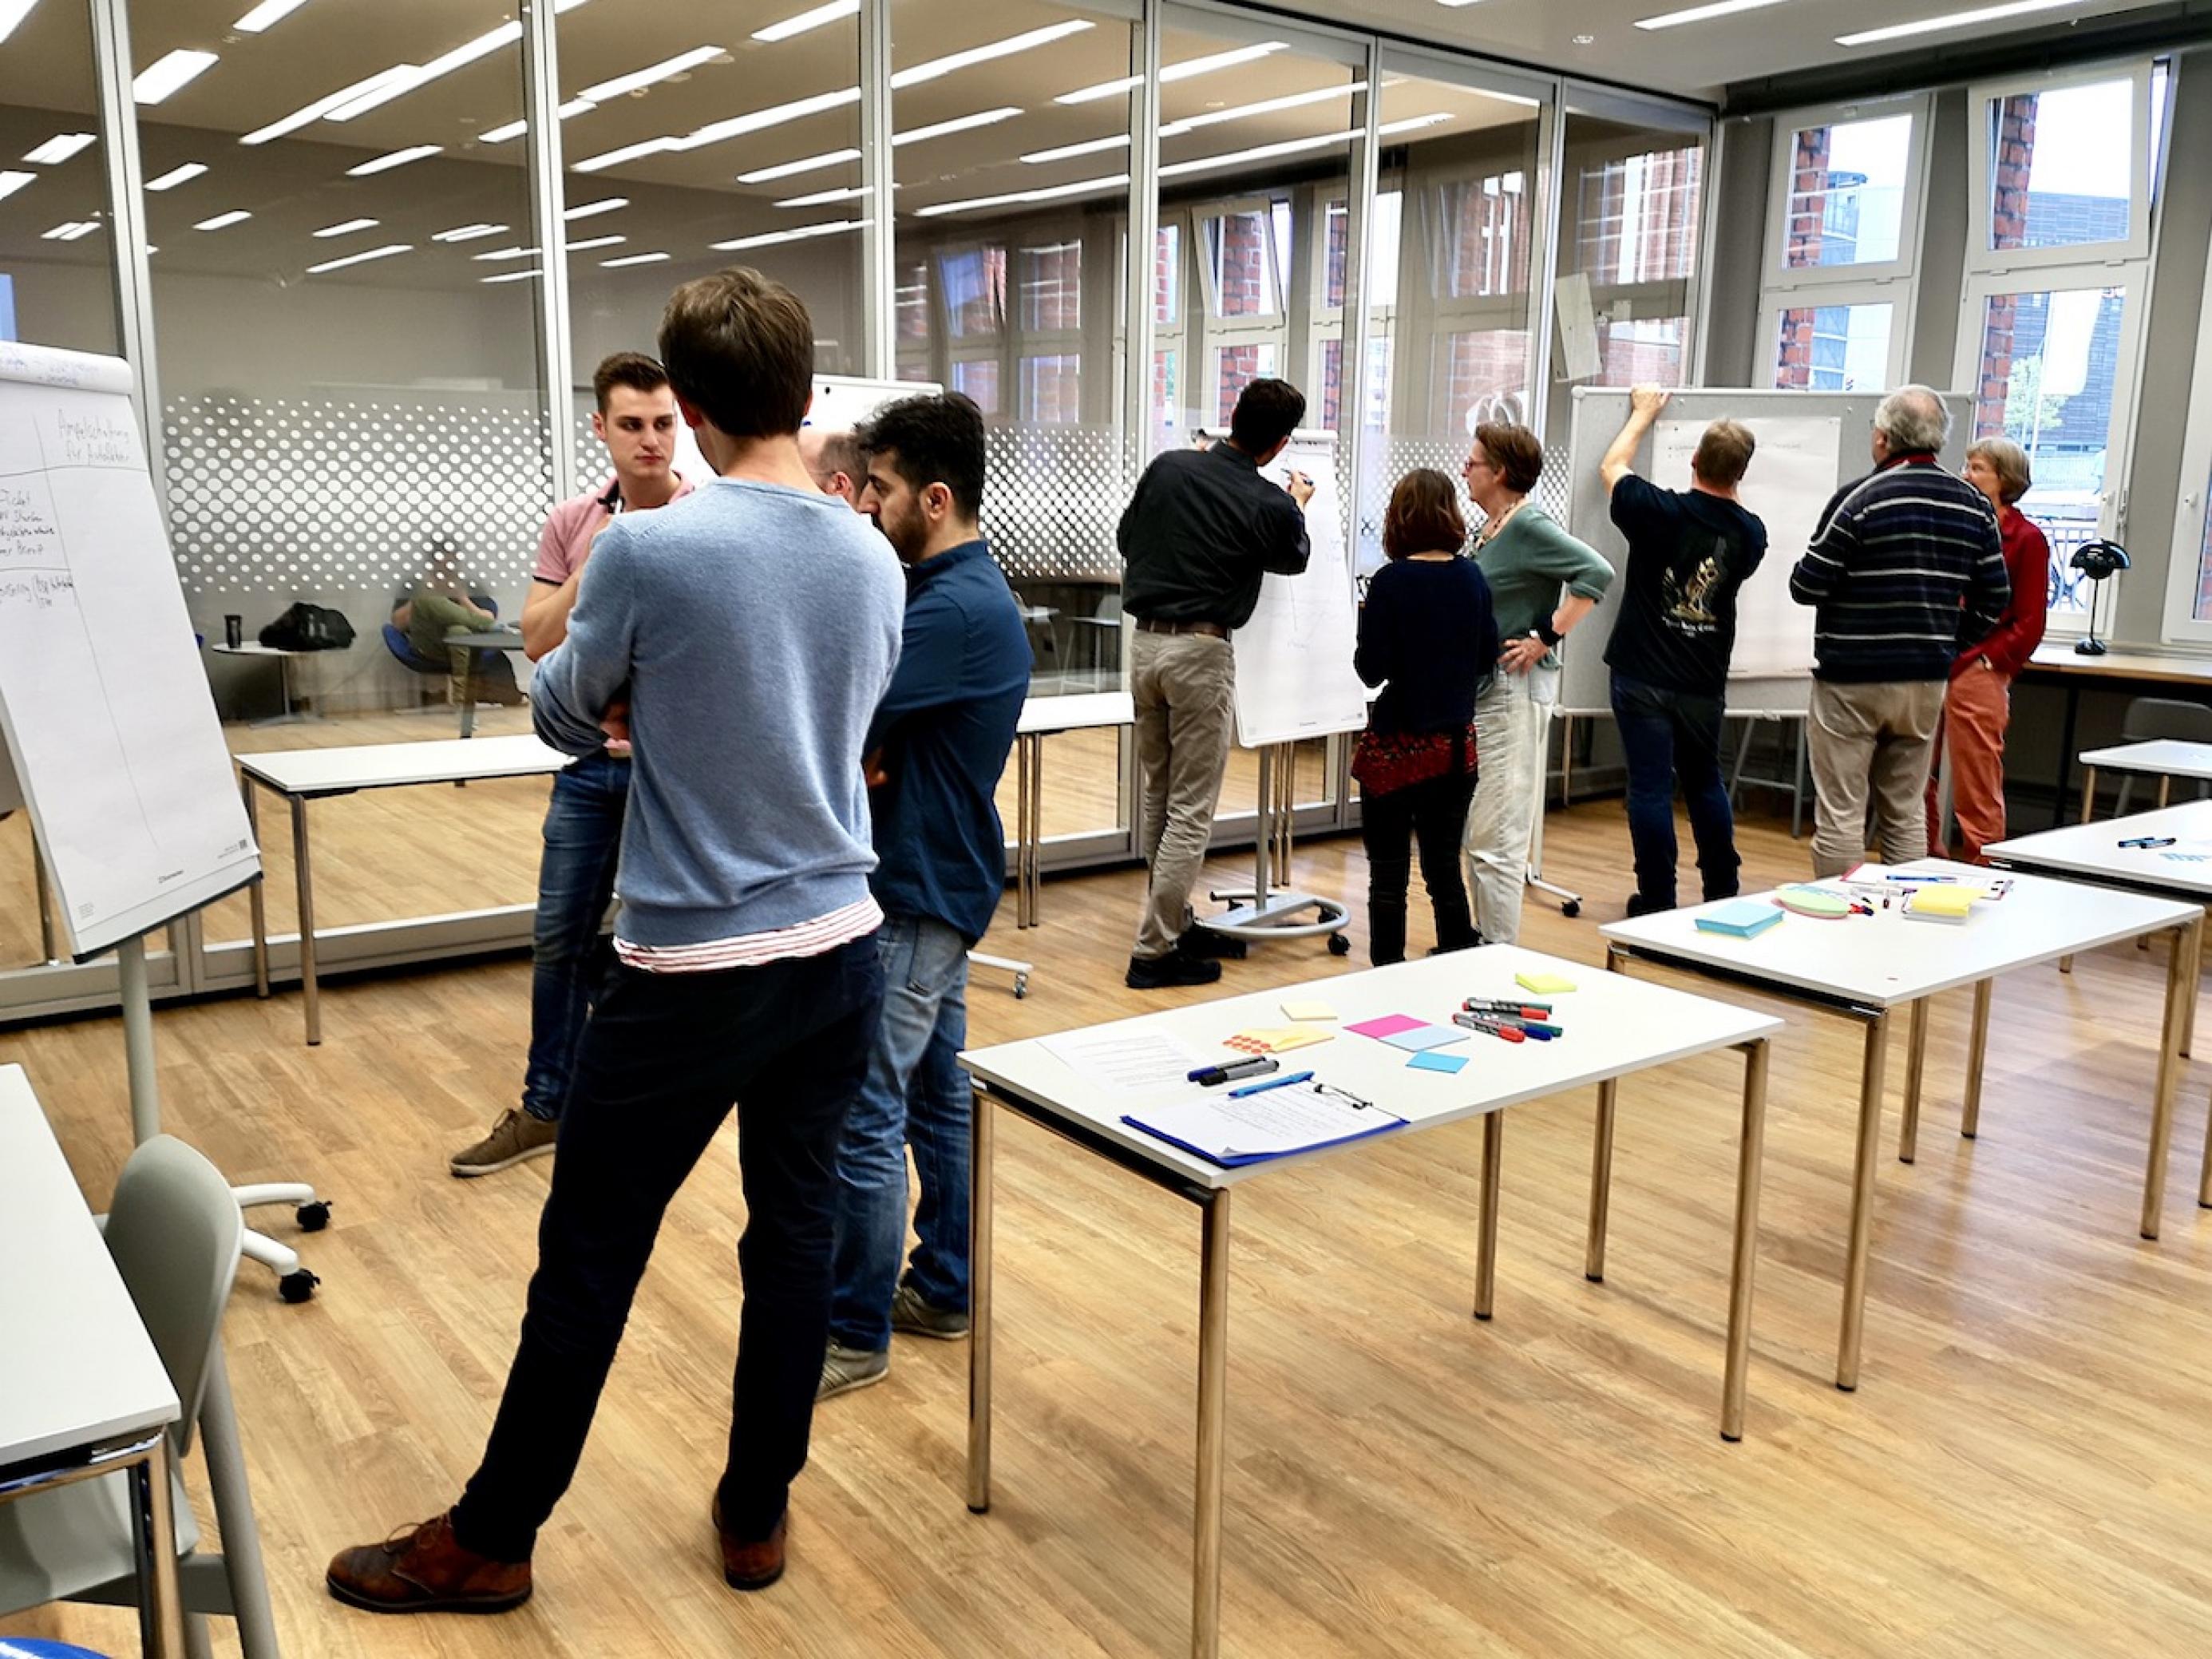 Arbeitsphase in der Hamburger Zentralbibliothek: Vier Gruppen stehen vor den Stellwänden und diskutieren